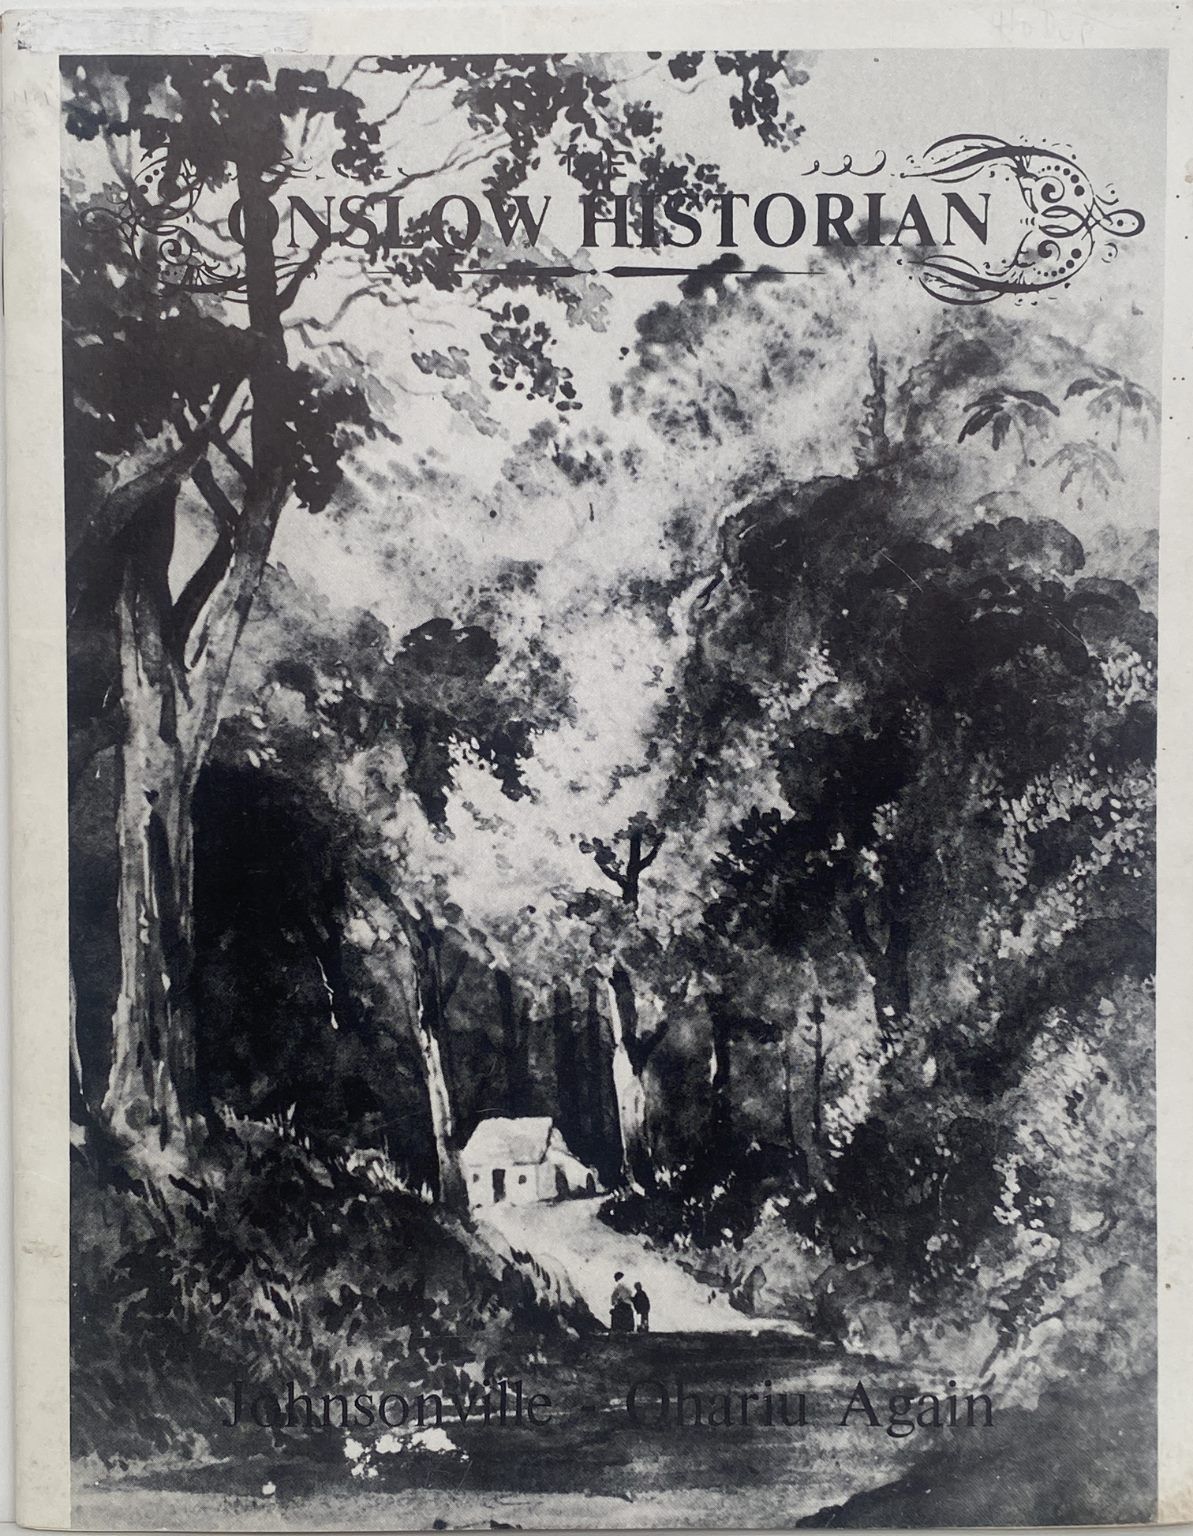 THE ONSLOW HISTORIAN: Vol. 10 - No. 4, 1980